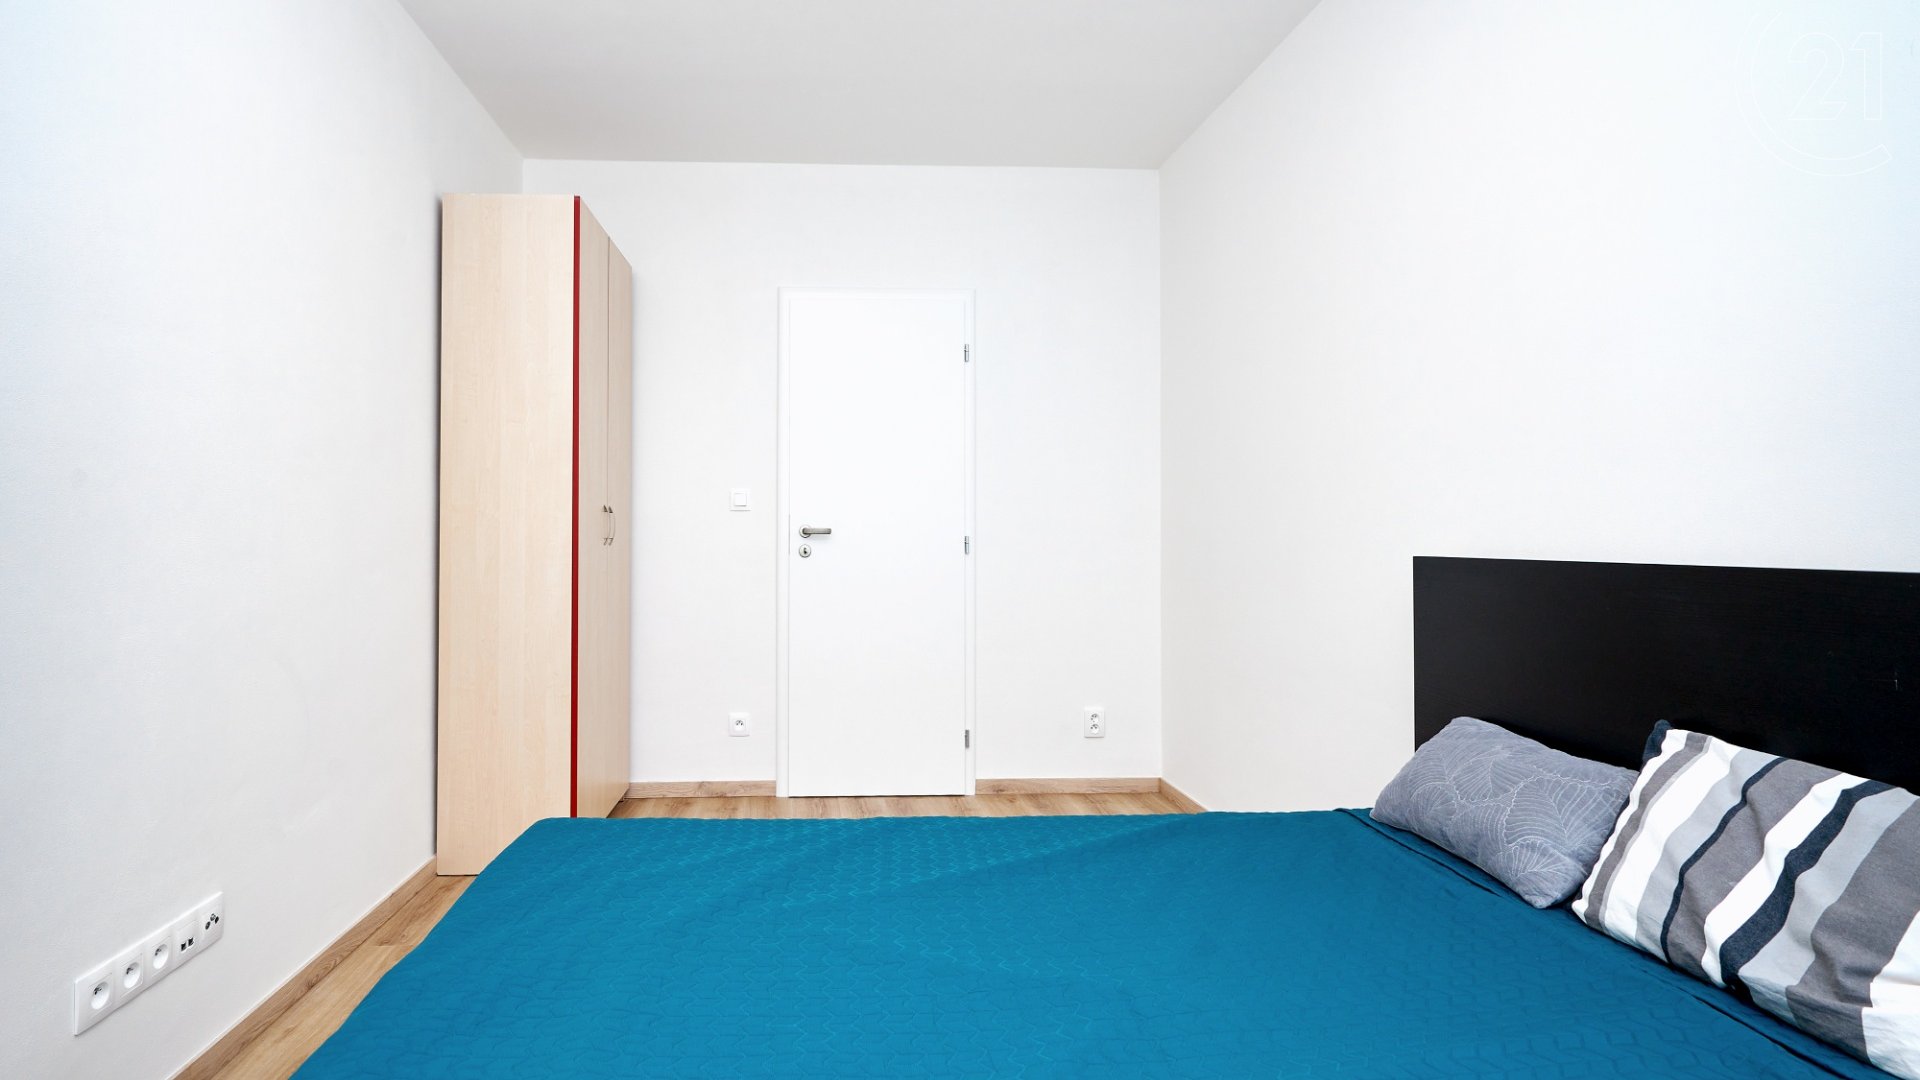 Pronájem bytu 2+kk s komorou na patře, 45 m², Praha 9 - Prosek, ulice Pískovcová